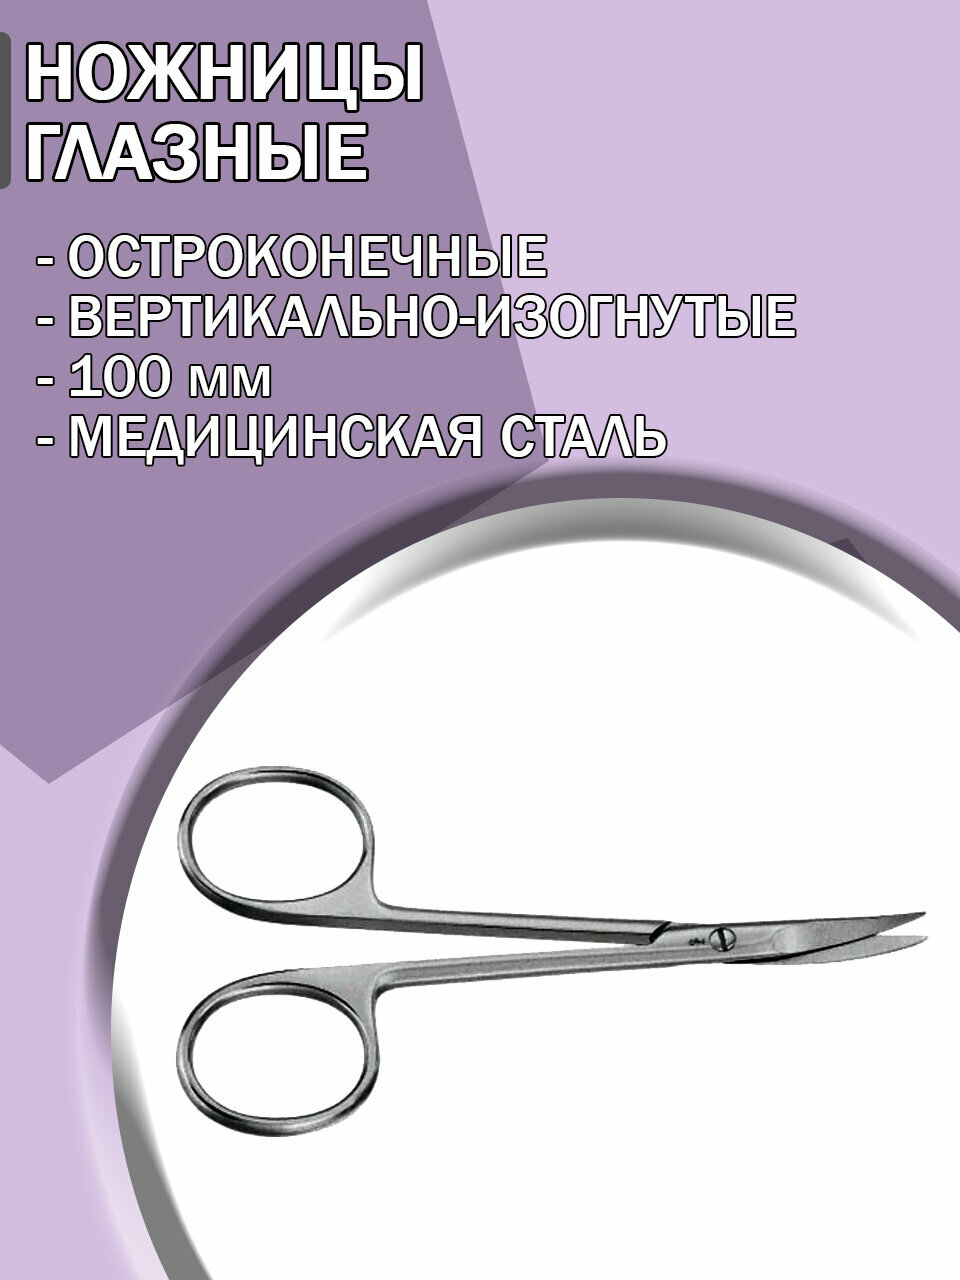 Ножницы глазные хирургические остроконечные вертикально-изогнутые, 100 мм/Ножницы медицинские